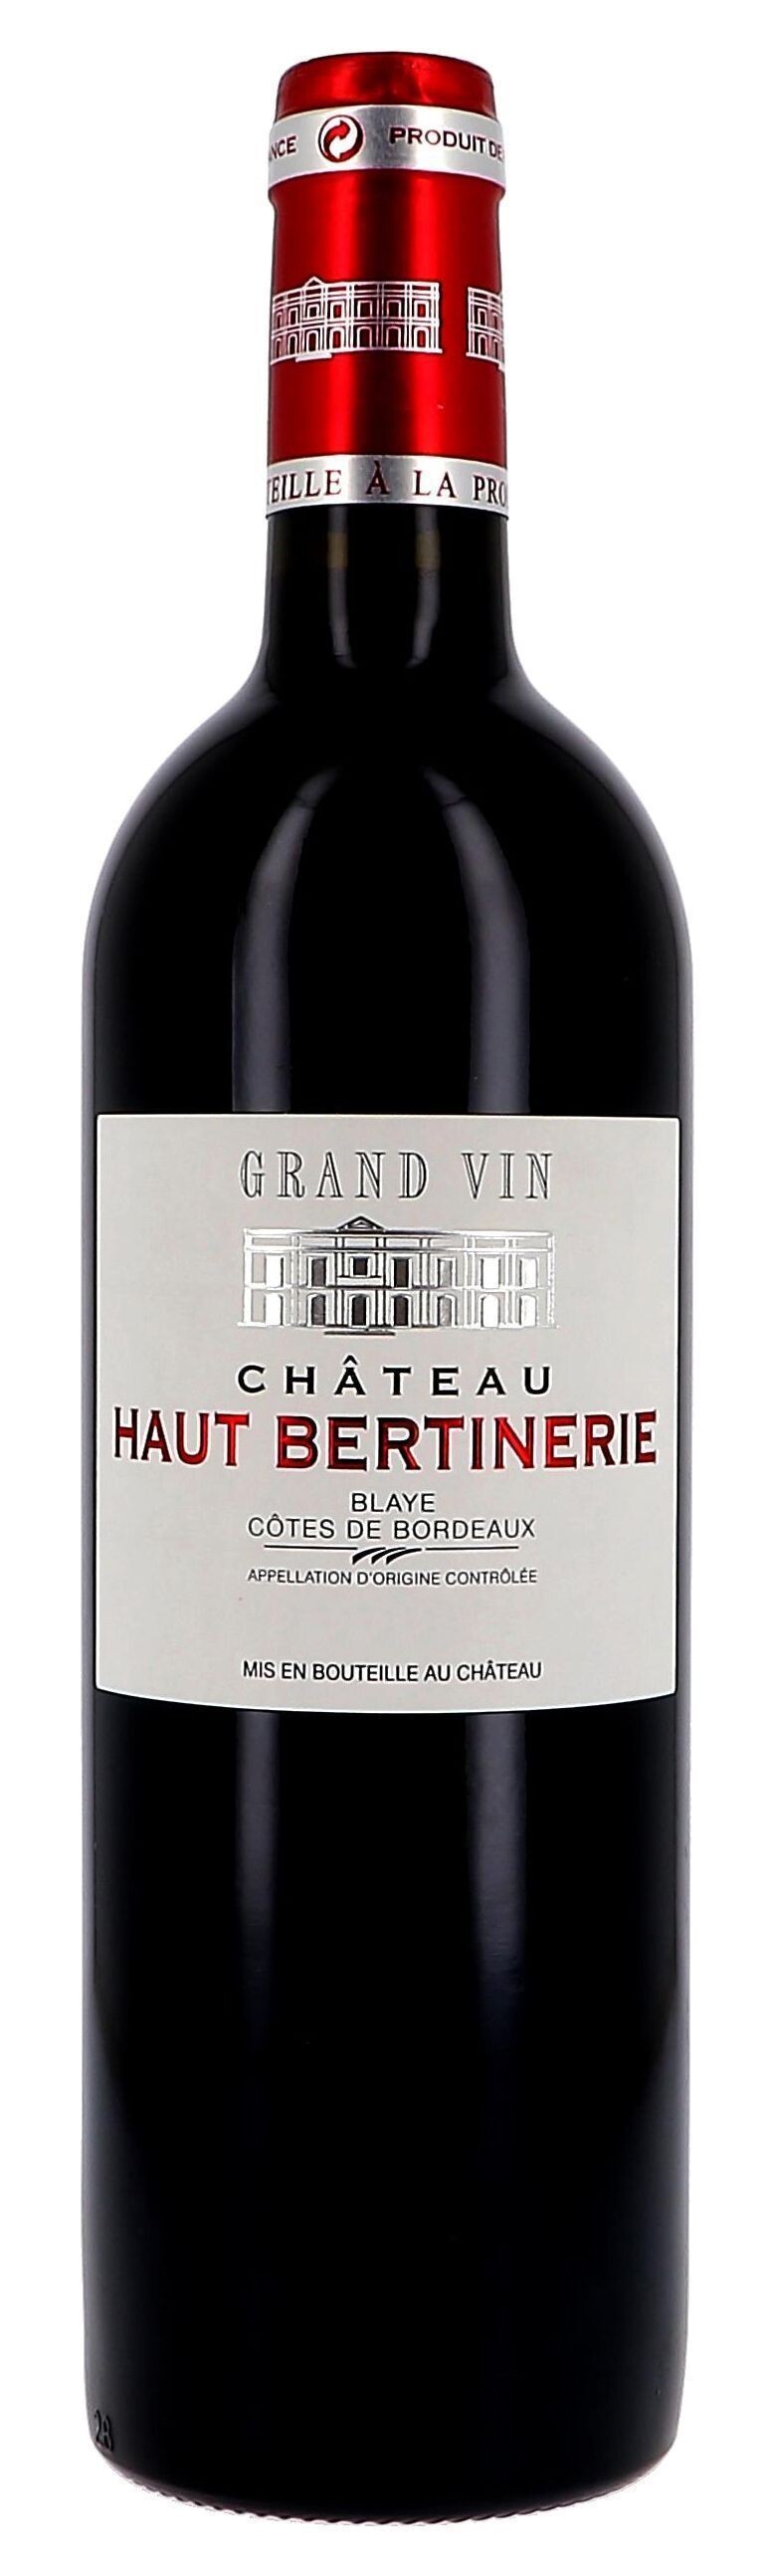 Chateau Haut-Bertinerie red 75cl 2014 Blaye Cotes de Bordeaux (Wijnen)